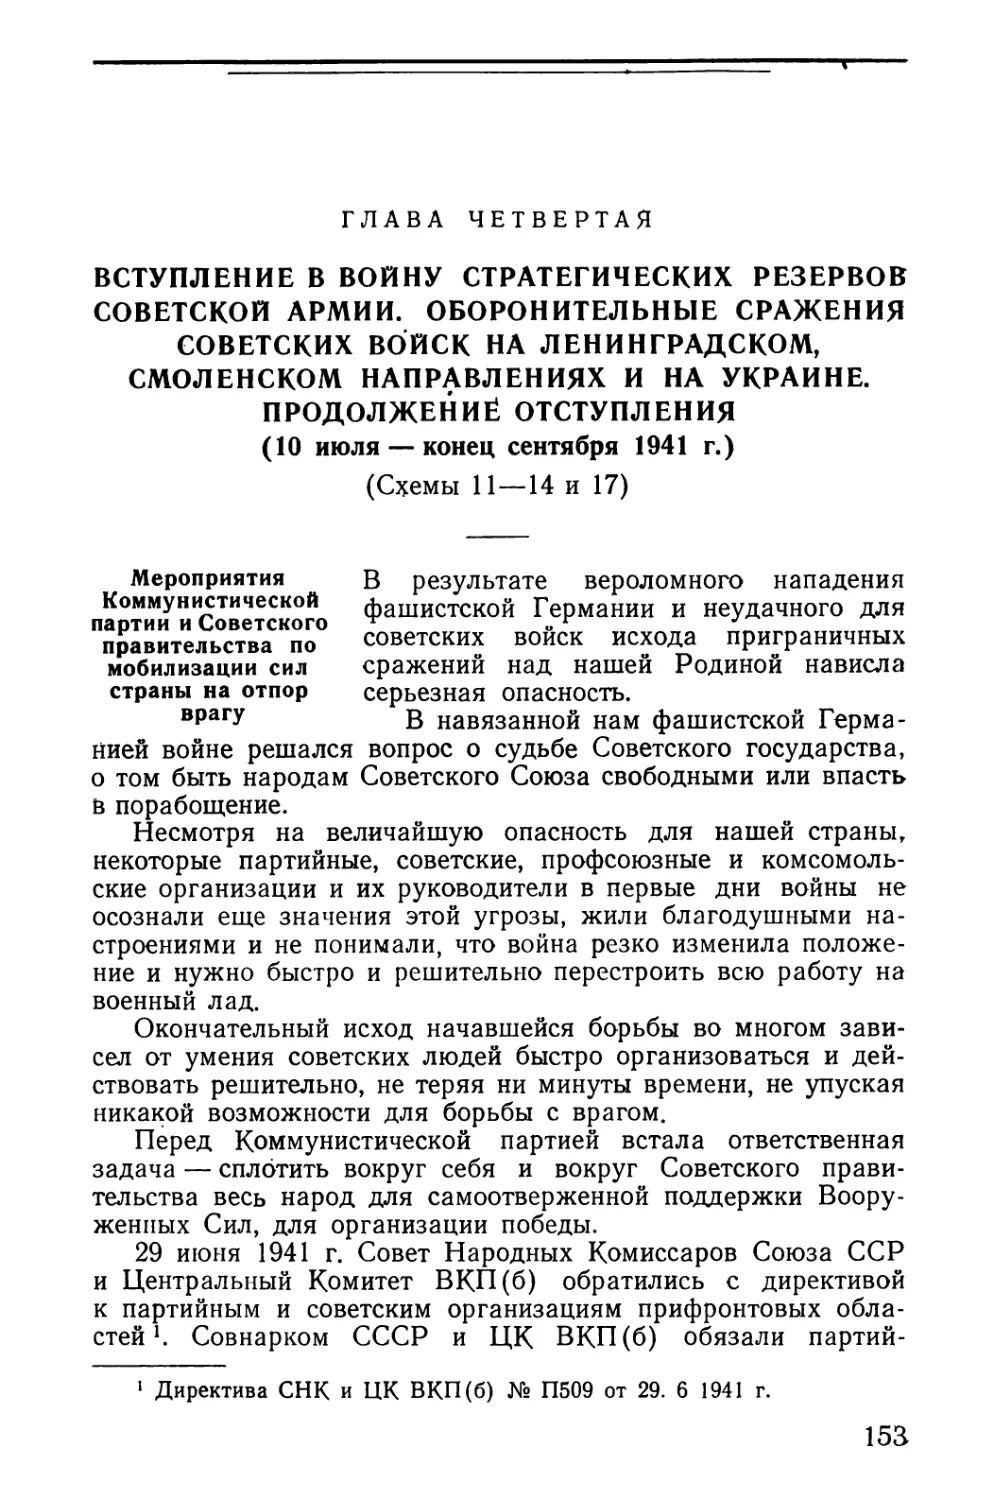 Мероприятия Коммунистической партии и Советского правительства по мобилизации сил страны на отпор врагу